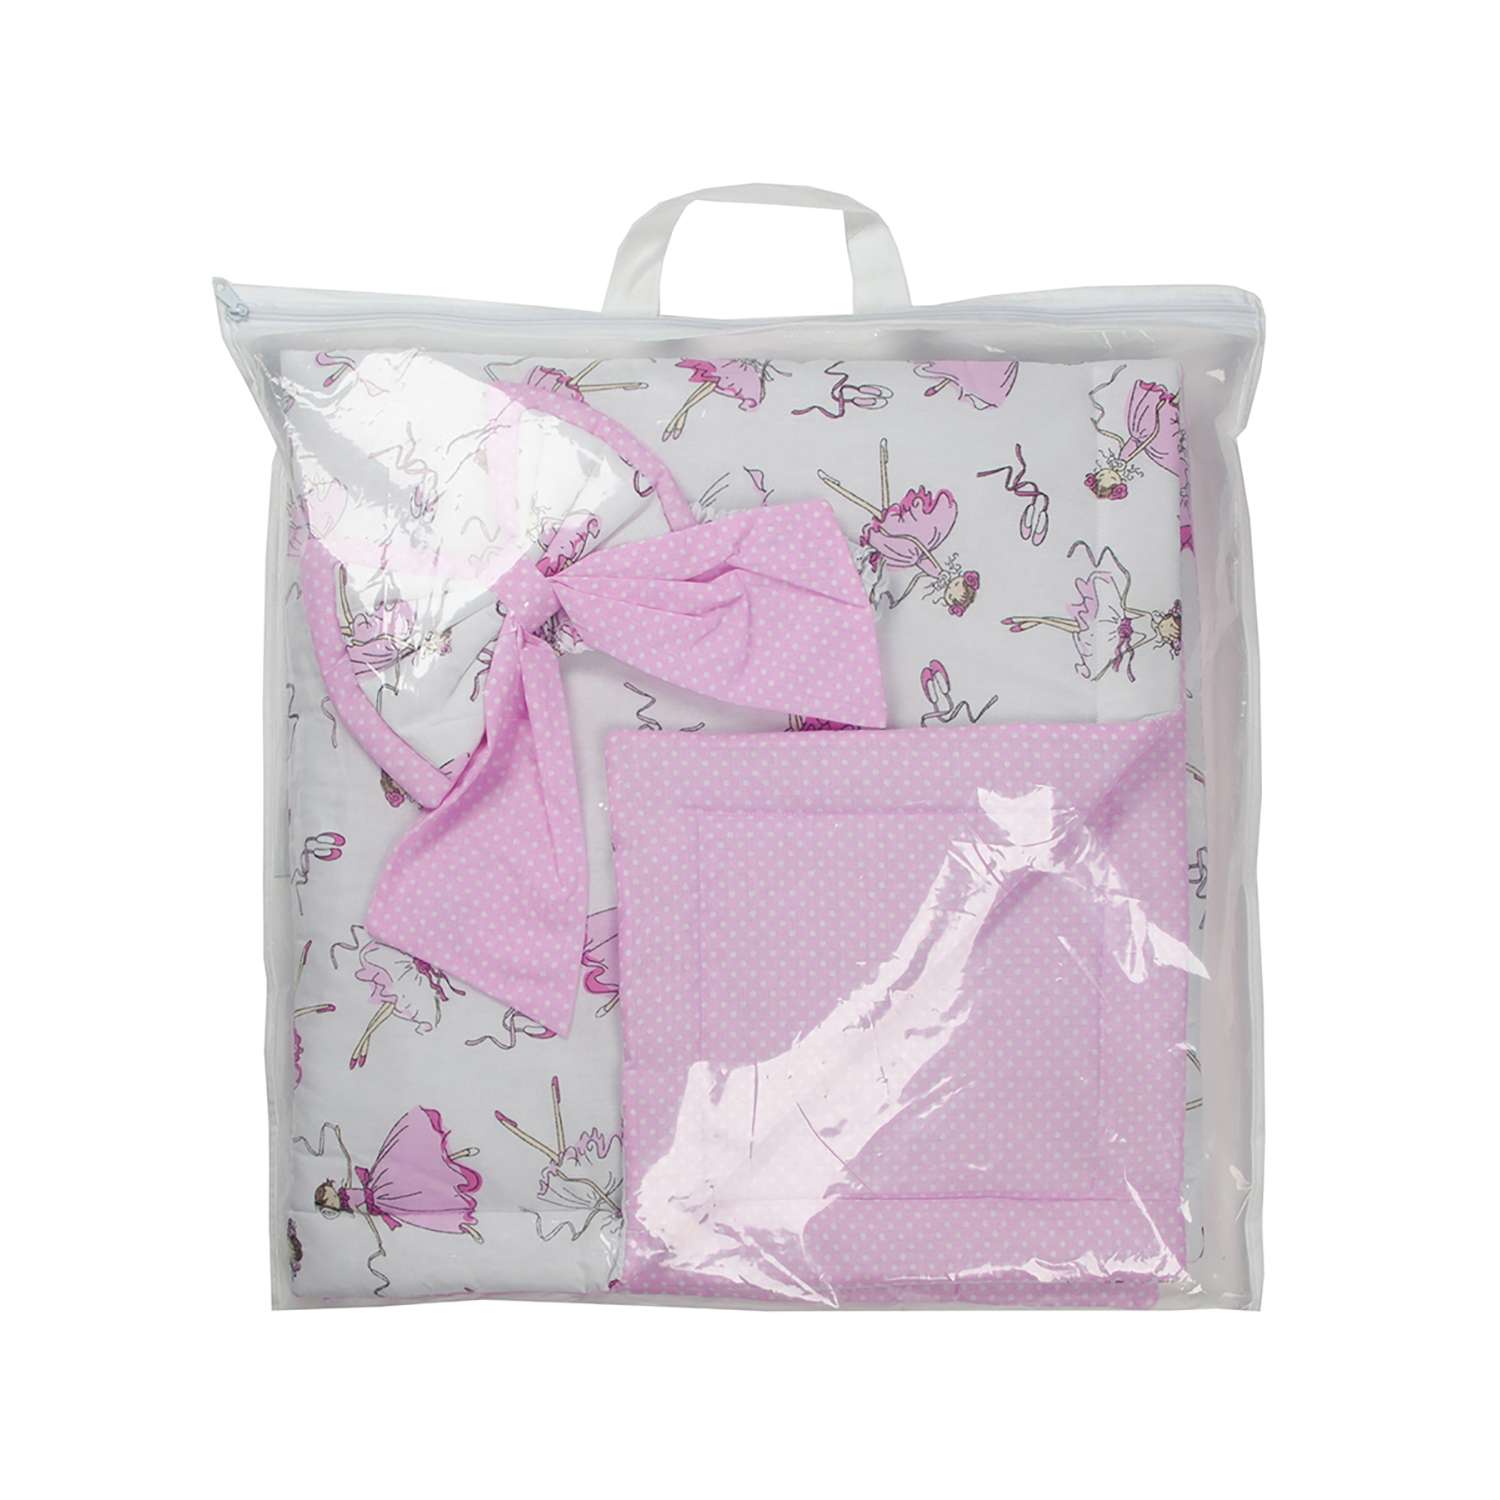 Конверт-одеяло Чудо-чадо для новорожденного на выписку Нелето балерины/розовый - фото 6